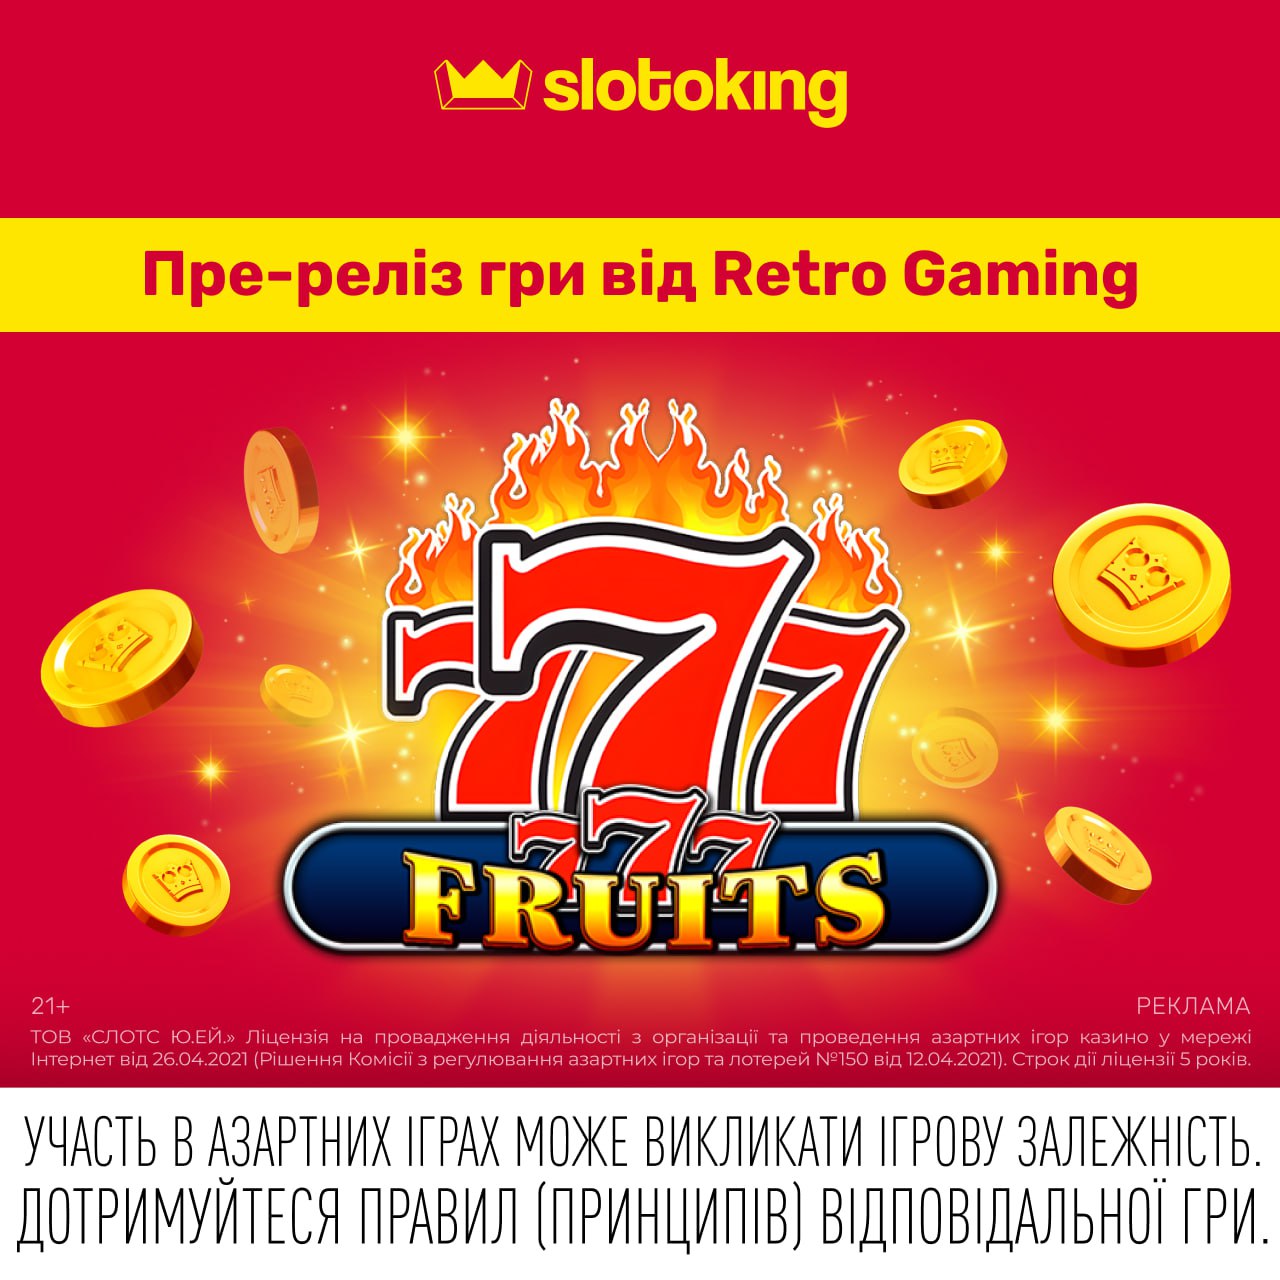 777-Fruits